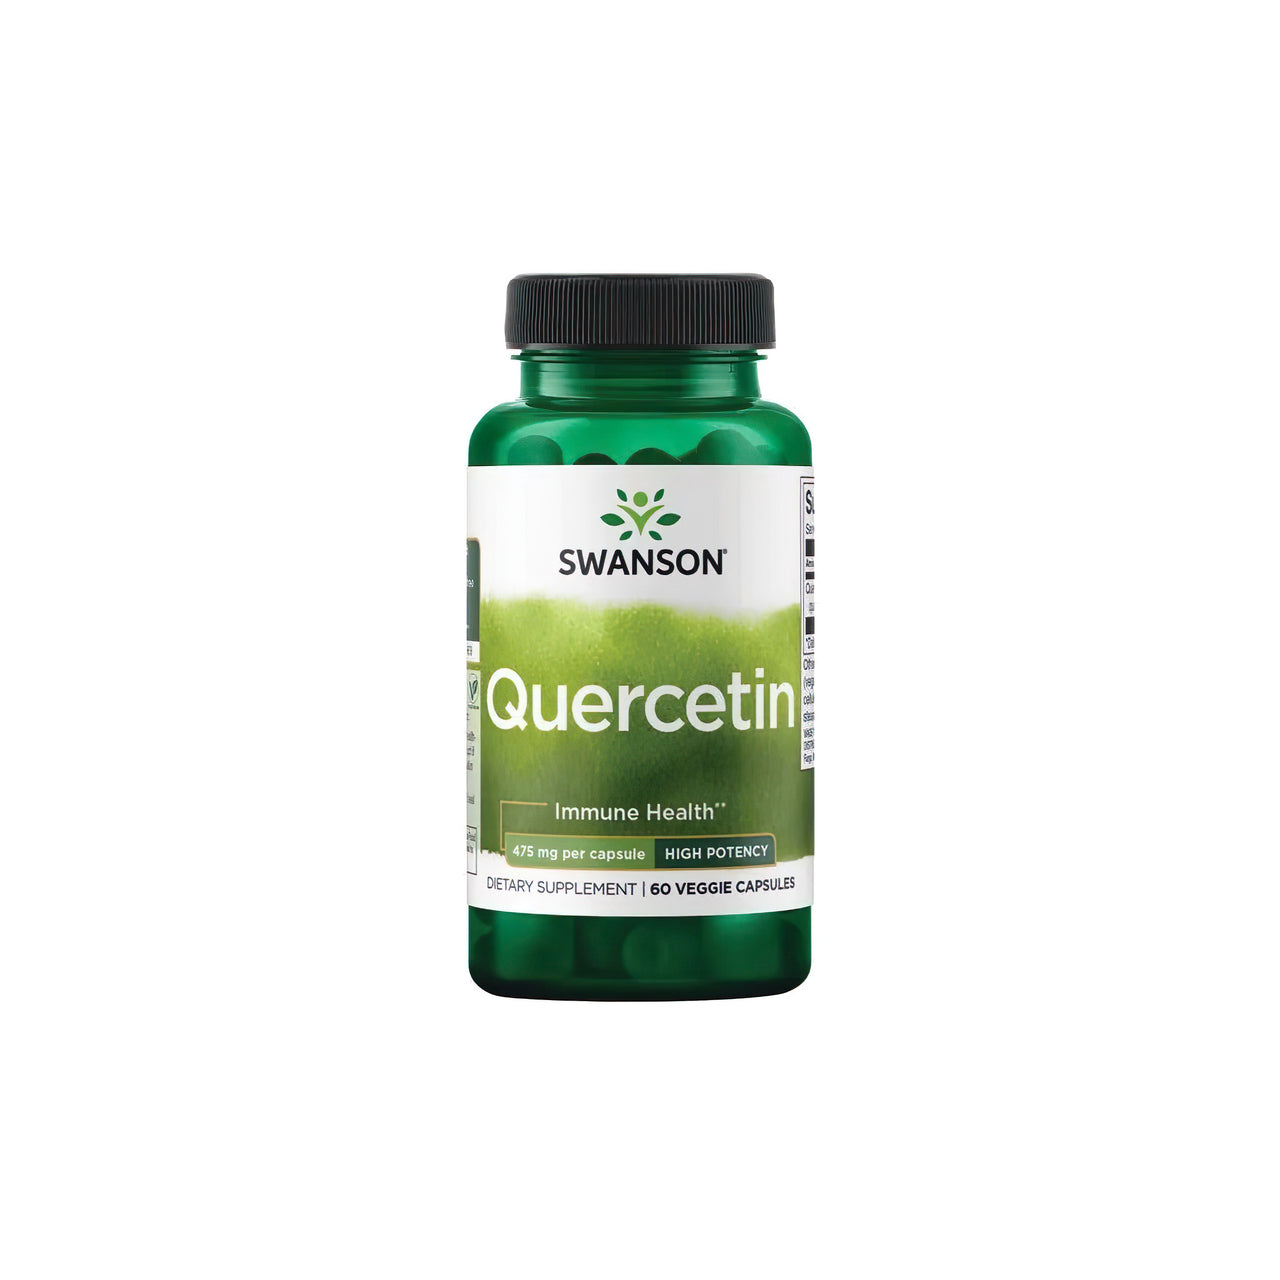 Un flacone di Swanson Quercetin 475 mg 60 vcaps, un potente antiossidante per il sistema immunitario, su uno sfondo bianco.